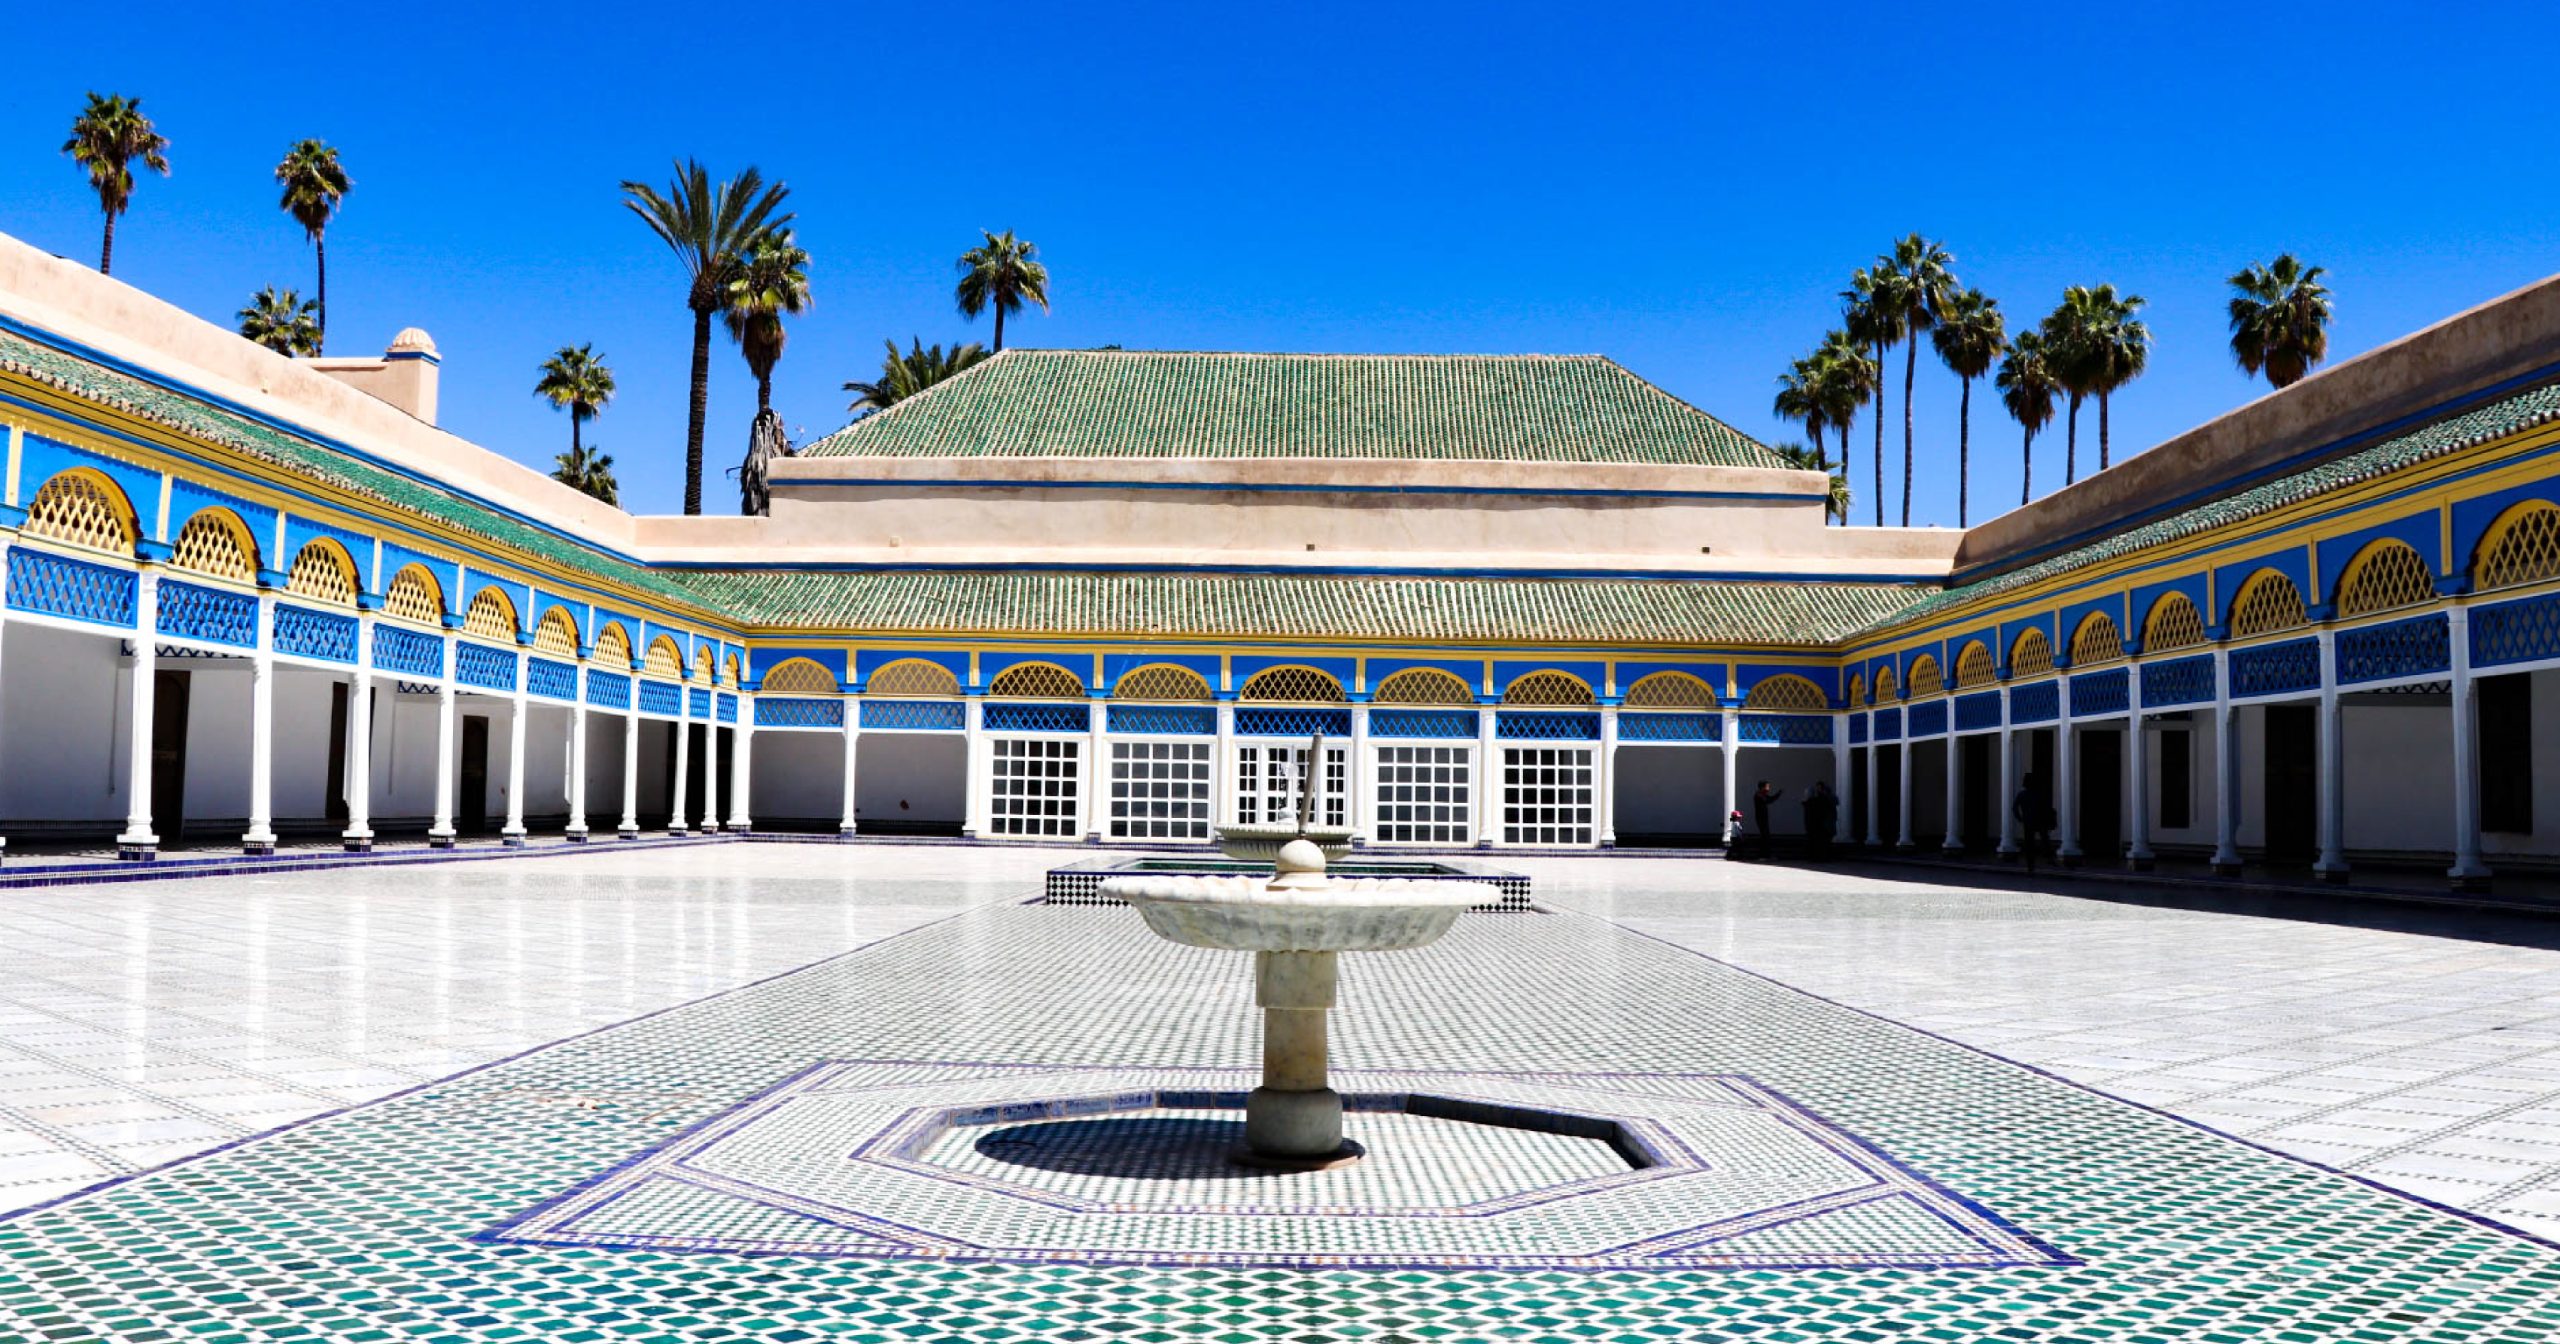 The Bahia Palace